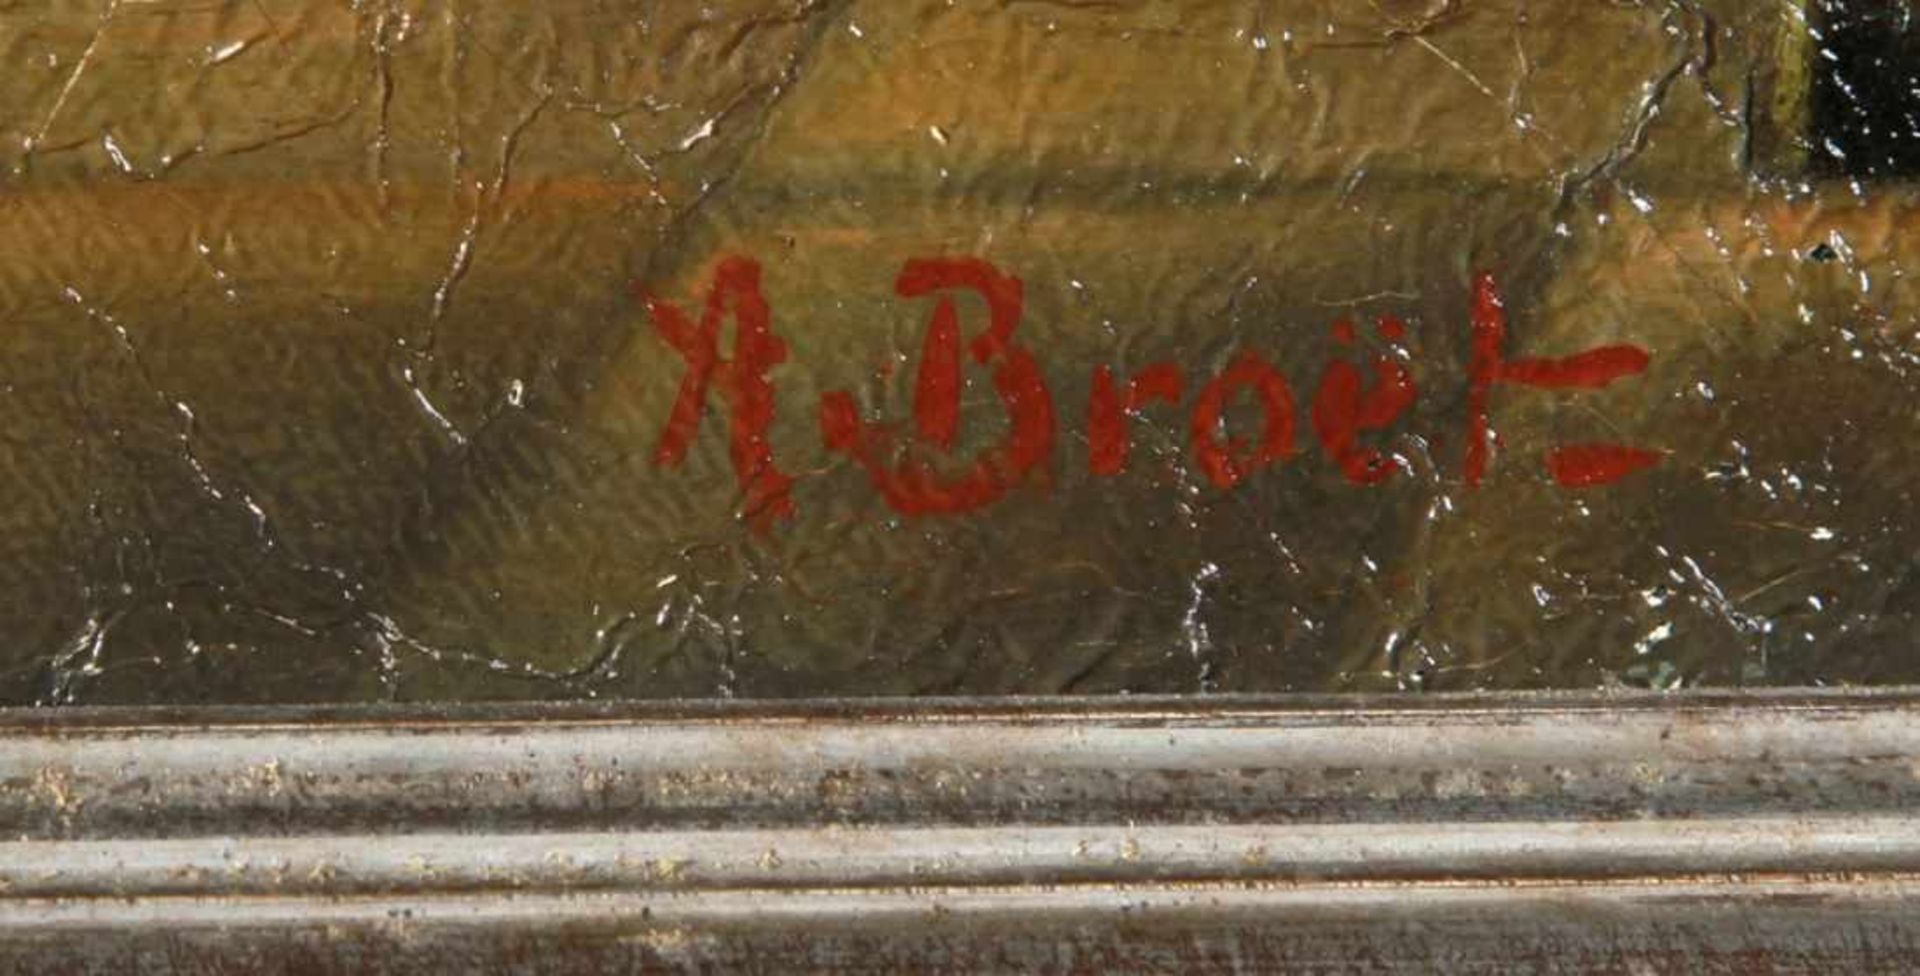 Broet, A., Maler 1. Hälfte 20. Jh. "Personen auf der Terrasse", sign., Öl/Lw., 47 x 66 cm,starkes - Bild 2 aus 2